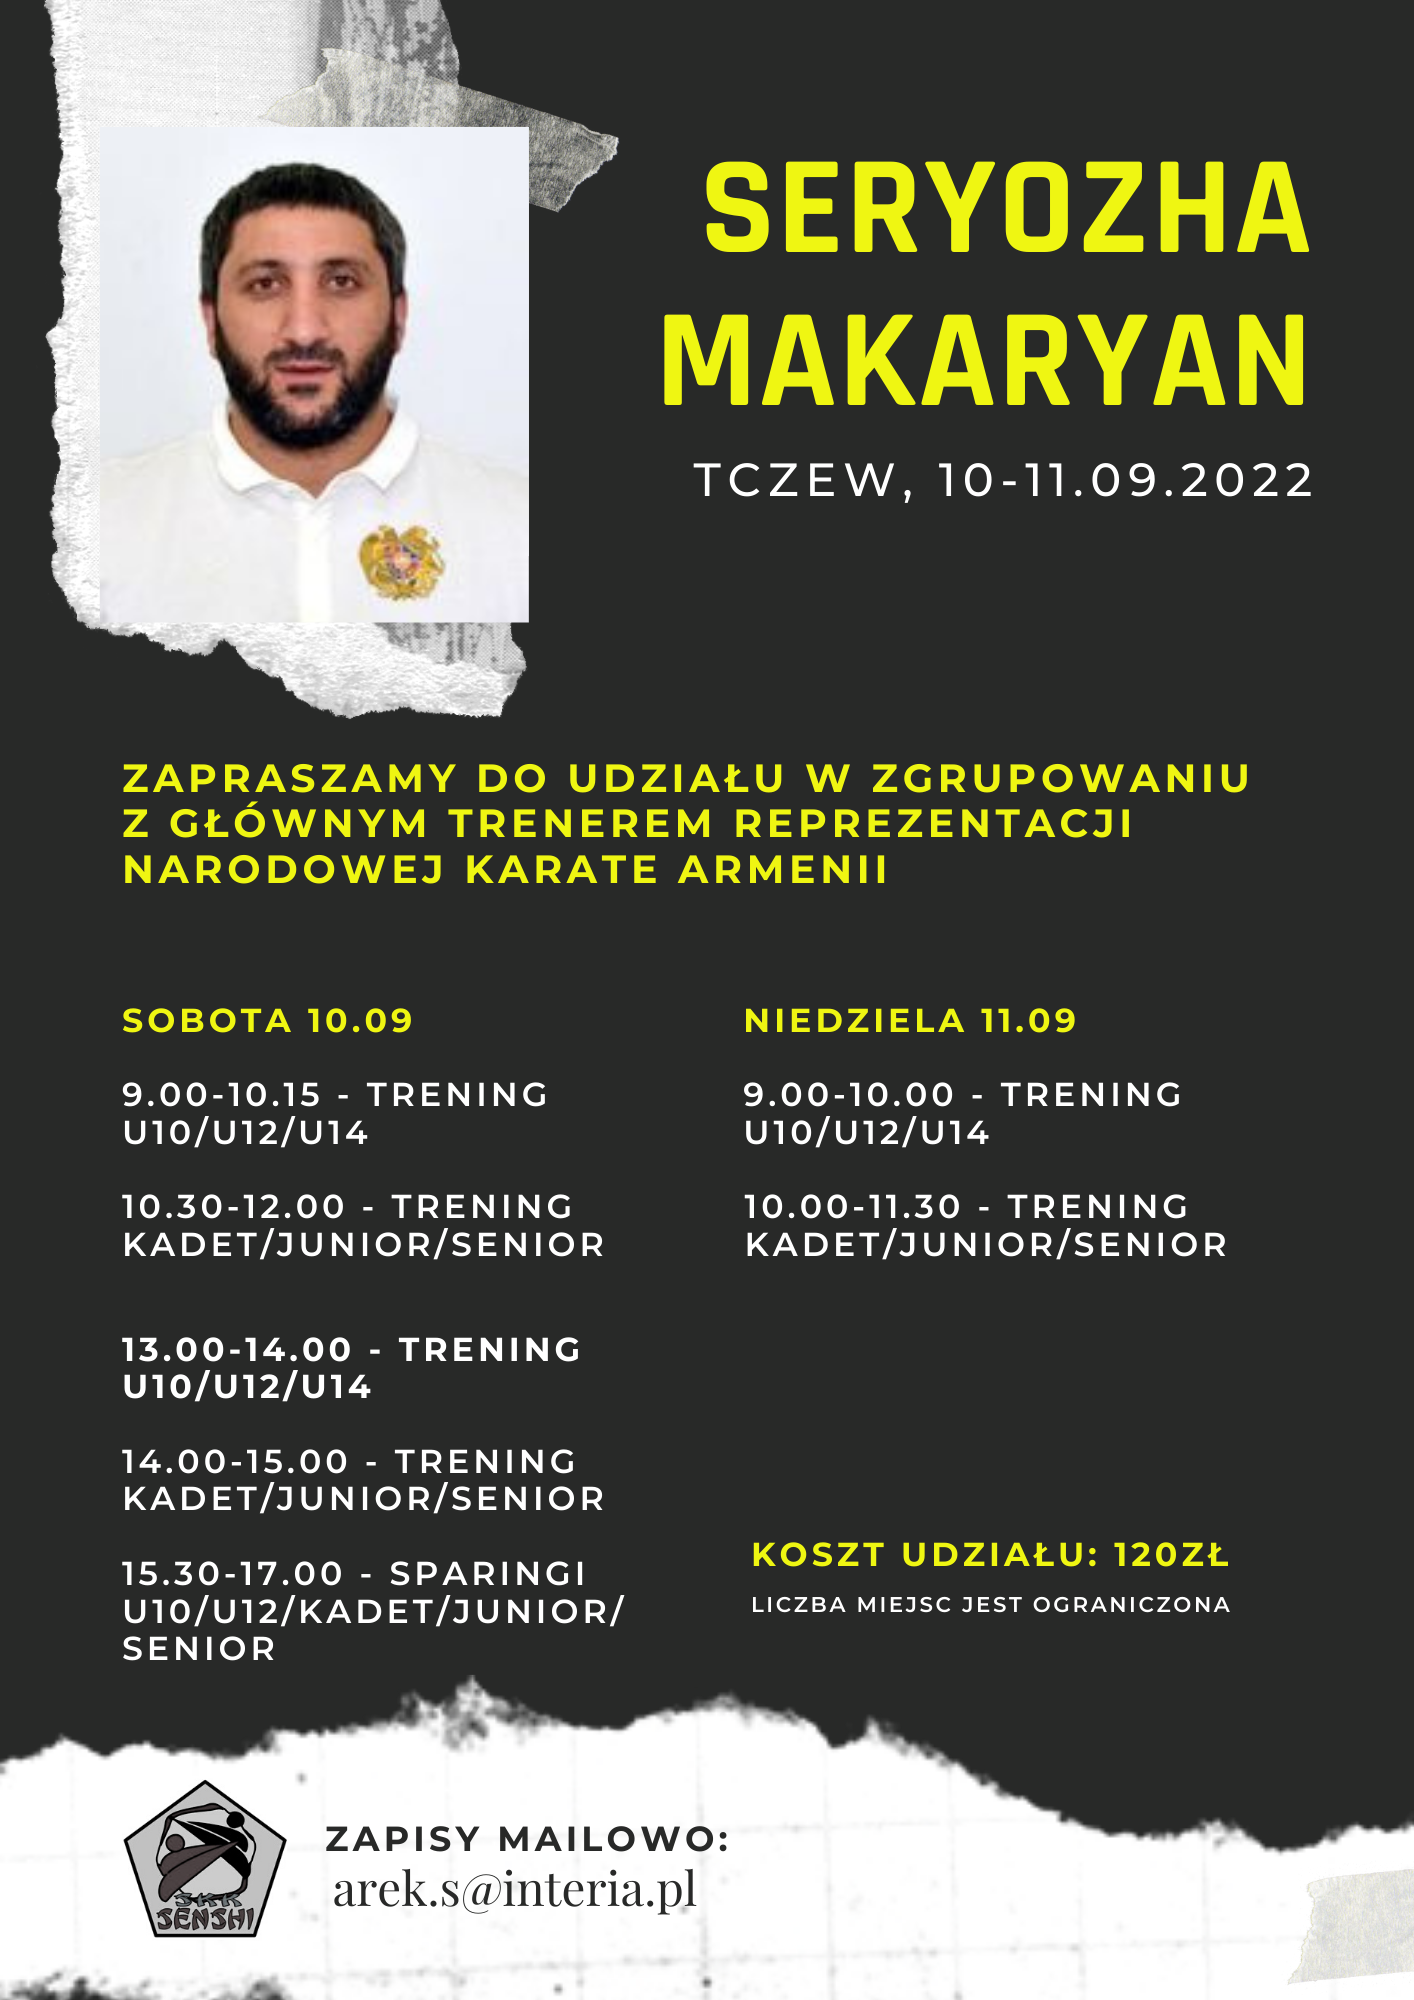 Seryozha Makaryan Aktual